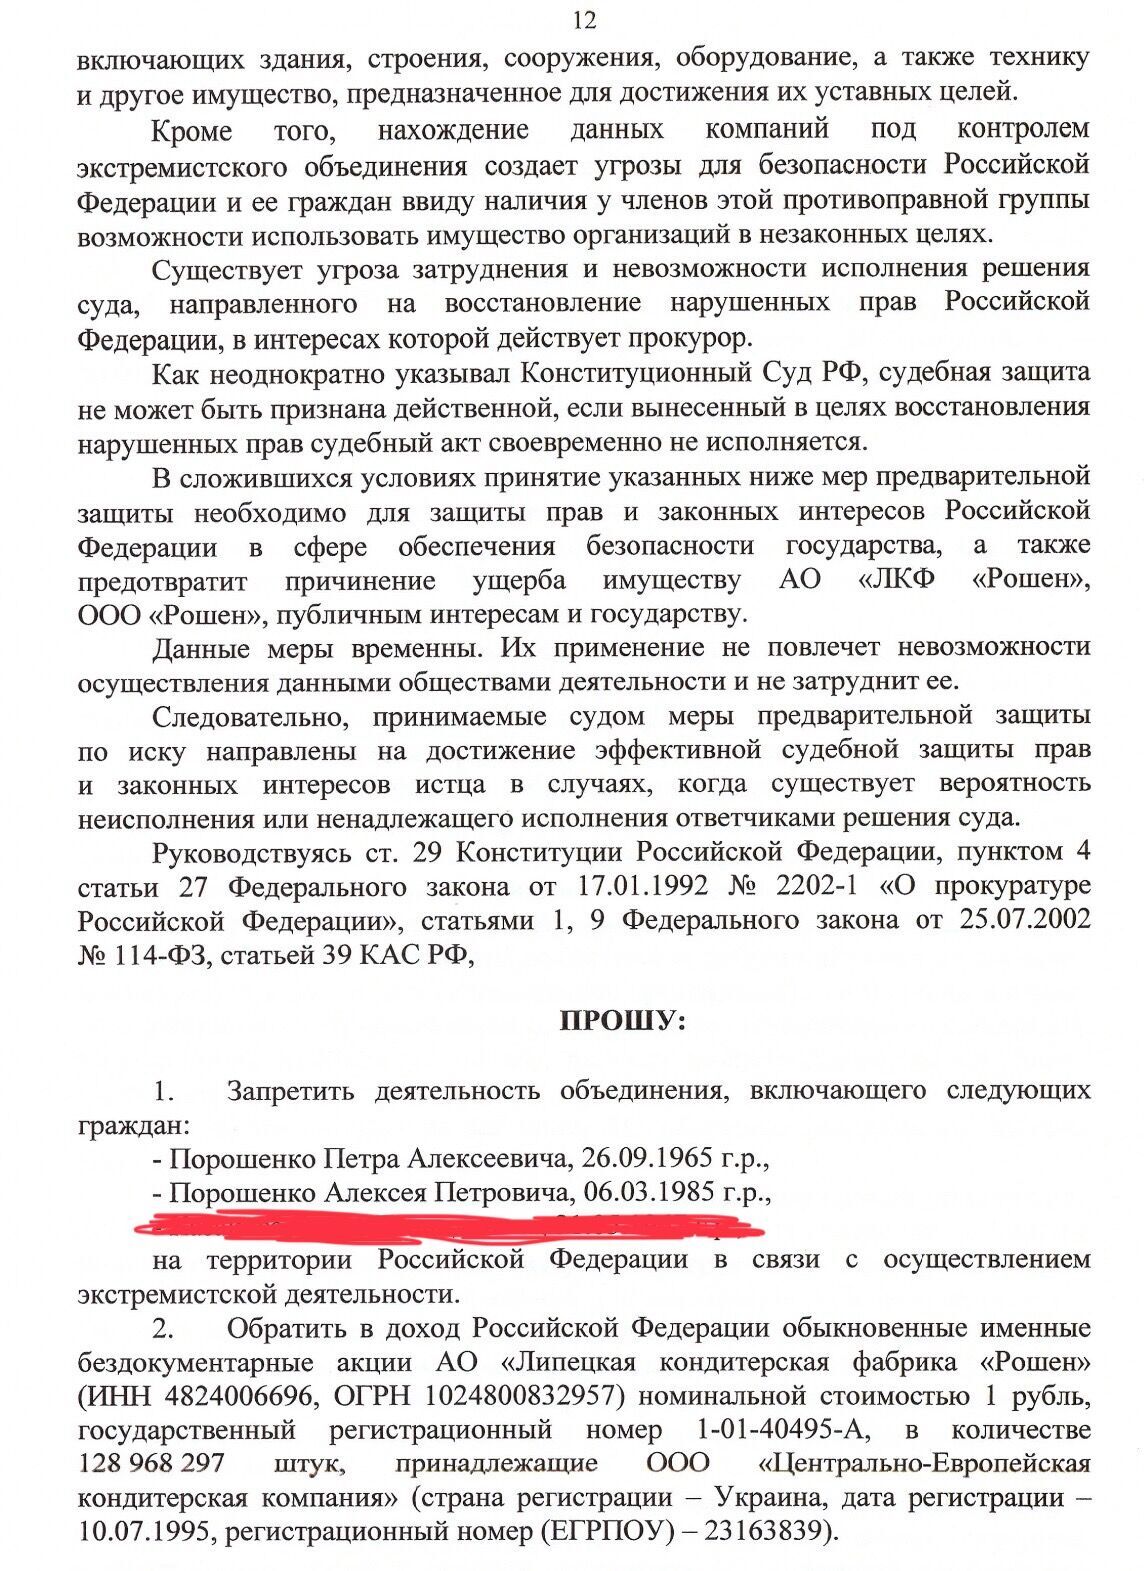 В России Порошенко считают экстремистом из-за многомиллиардной помощи ВСУ: адвокат обнародовал документы